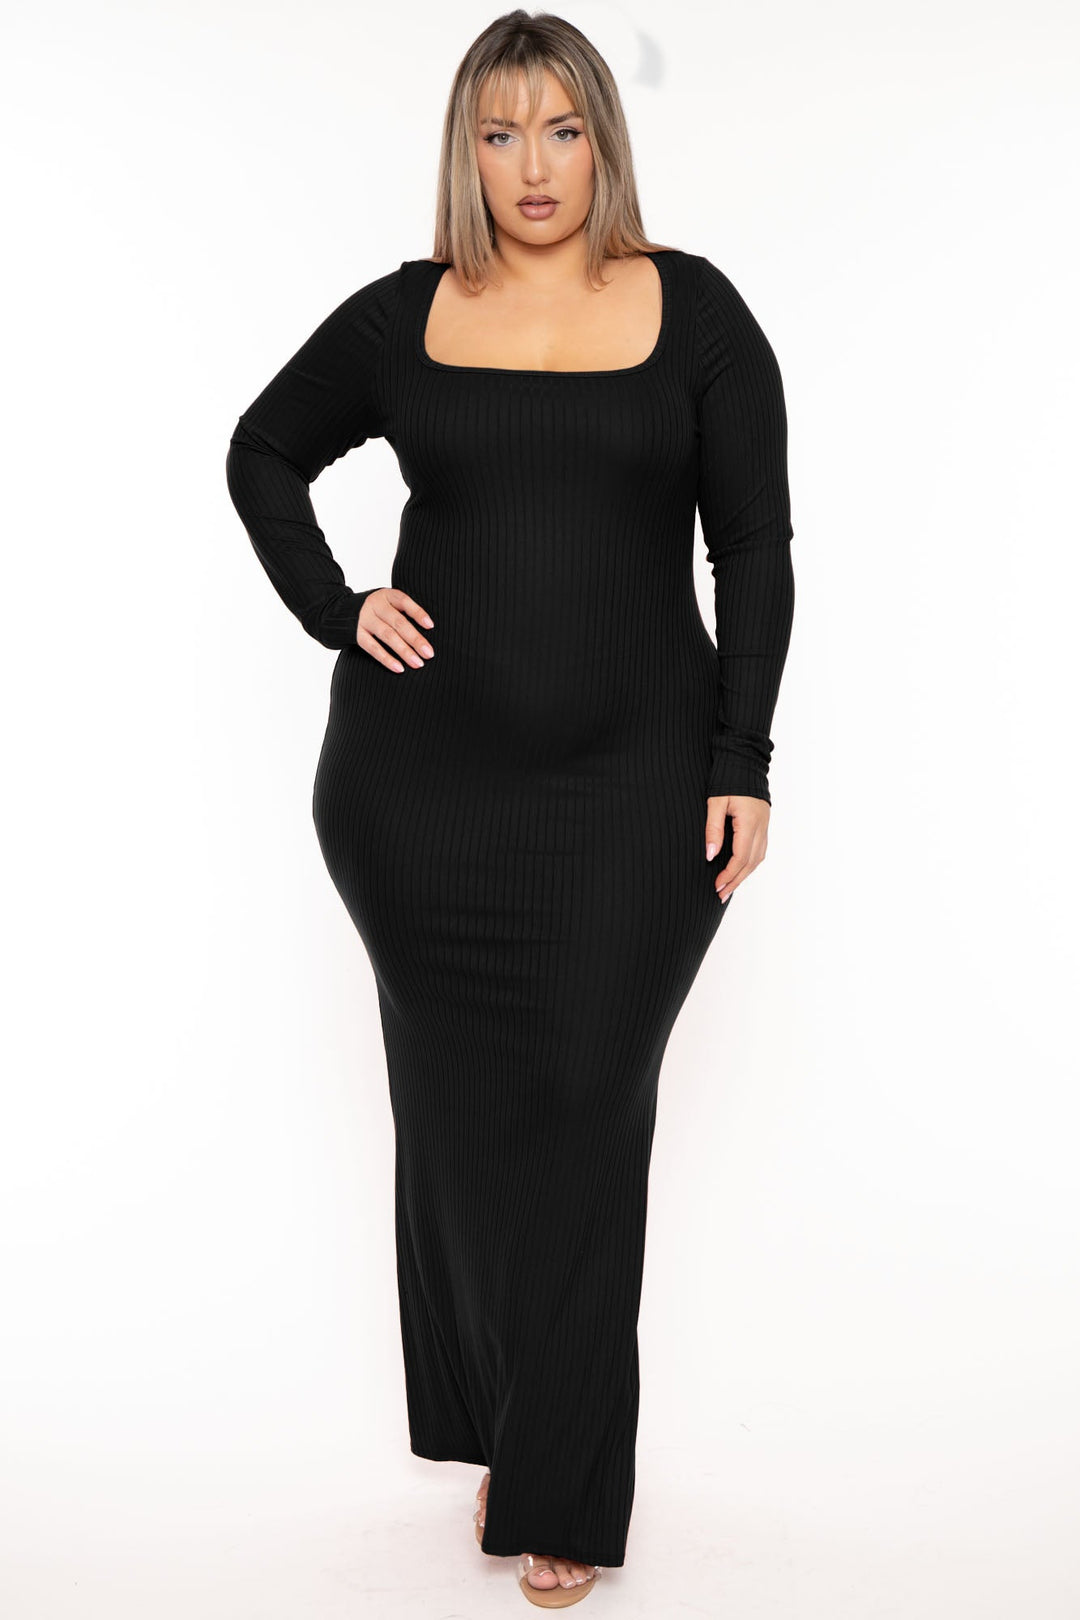 Plus Size Adalena Sequins Dress- Black